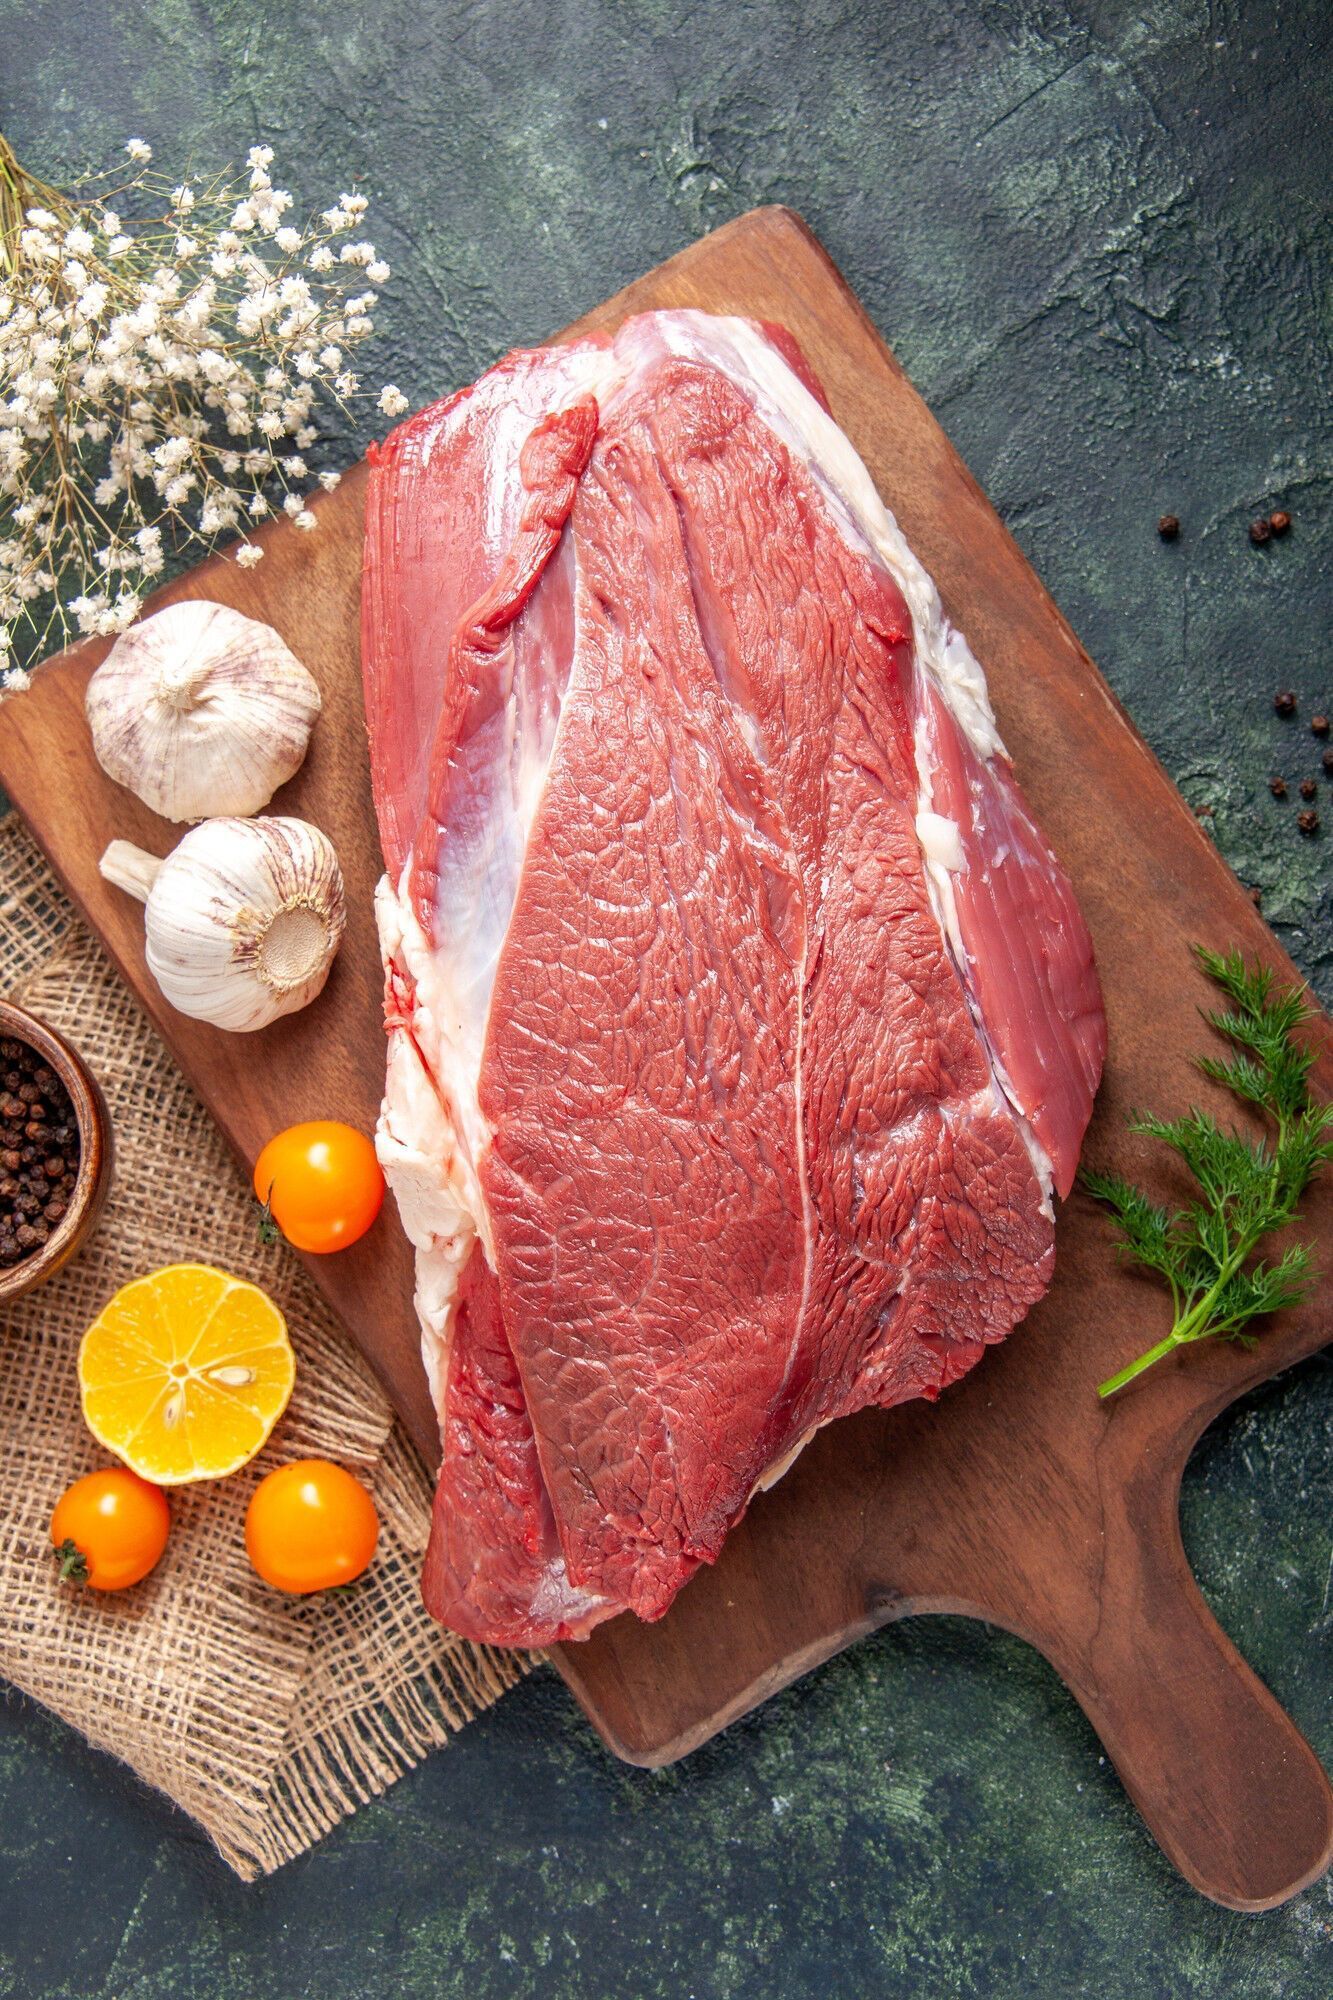 Как правильно выбрать мясо для шашлыка